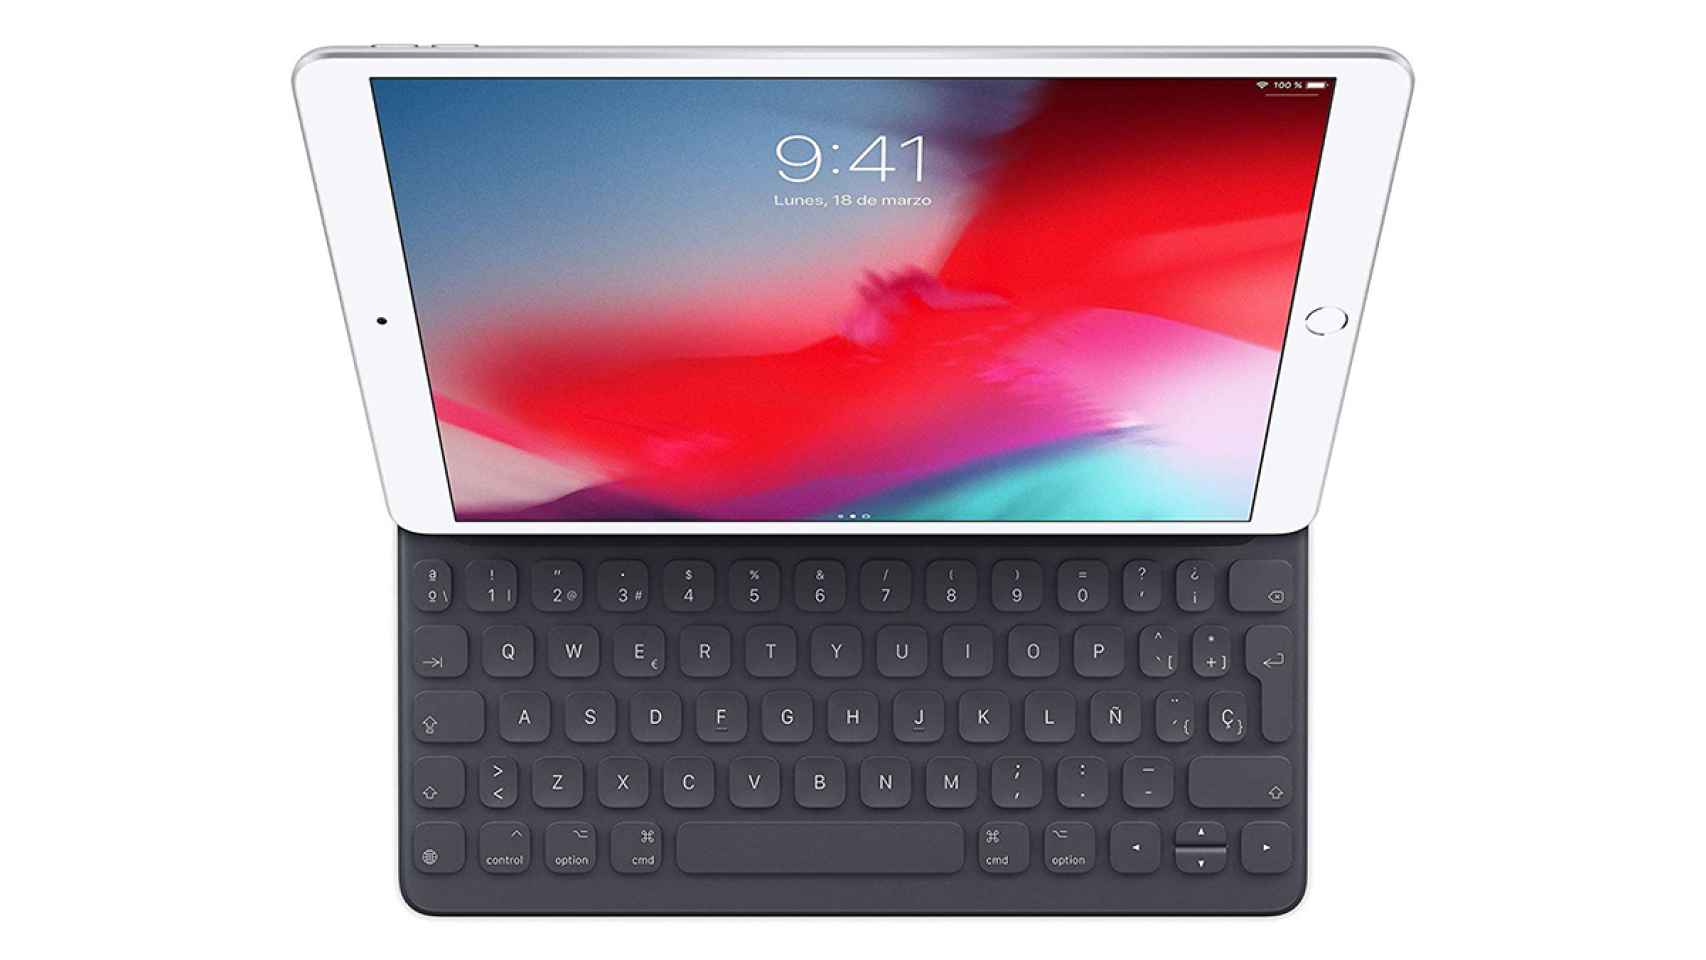 Cesta fusión Basura Apple venderá un teclado para iPad con trackpad para que dejes tu ordenador  de una vez